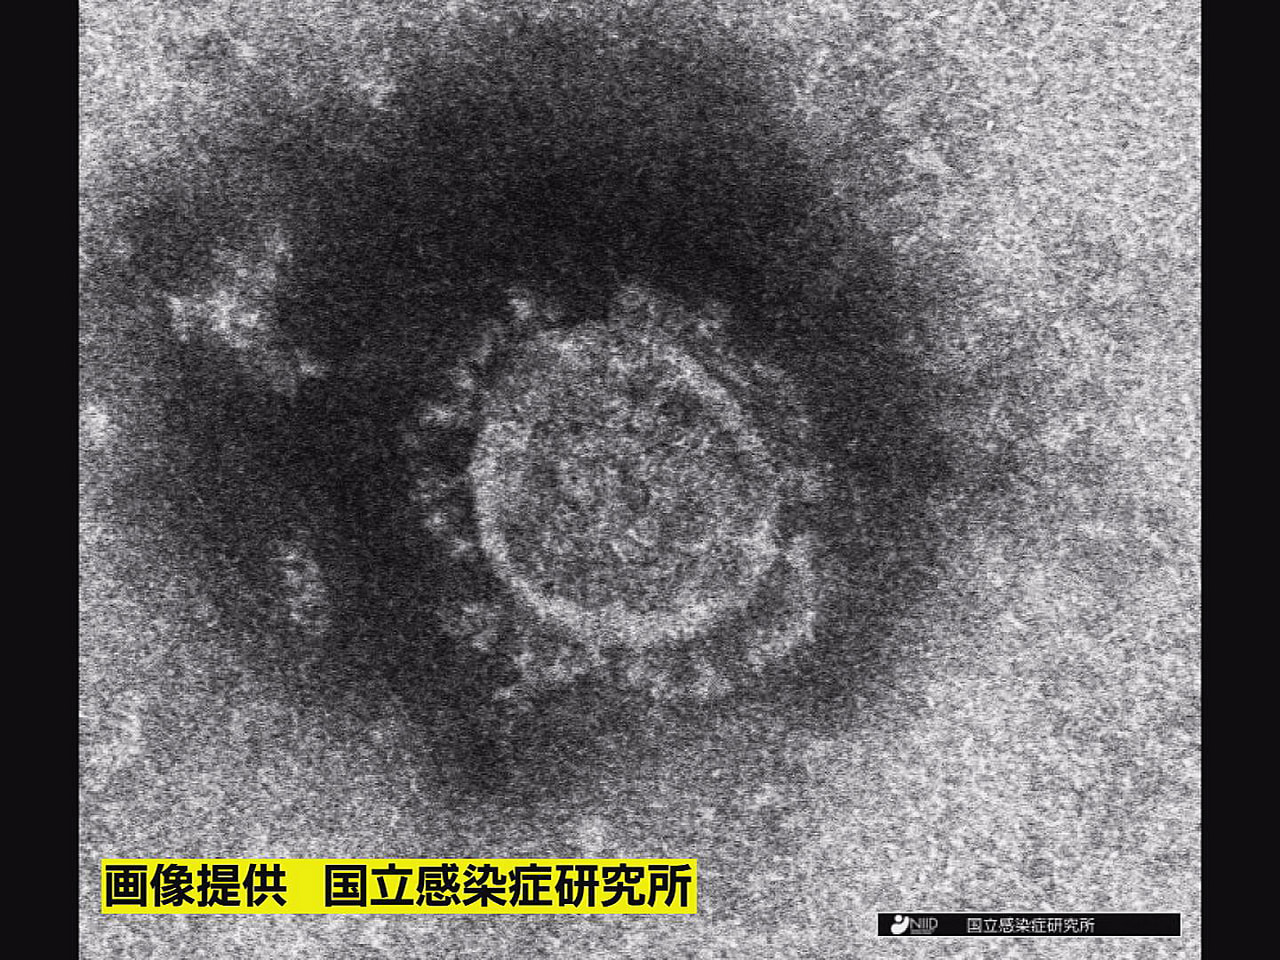 岐阜県は１９日、新型コロナウイルスの新規感染者が７１１人確認されたと発表しました...